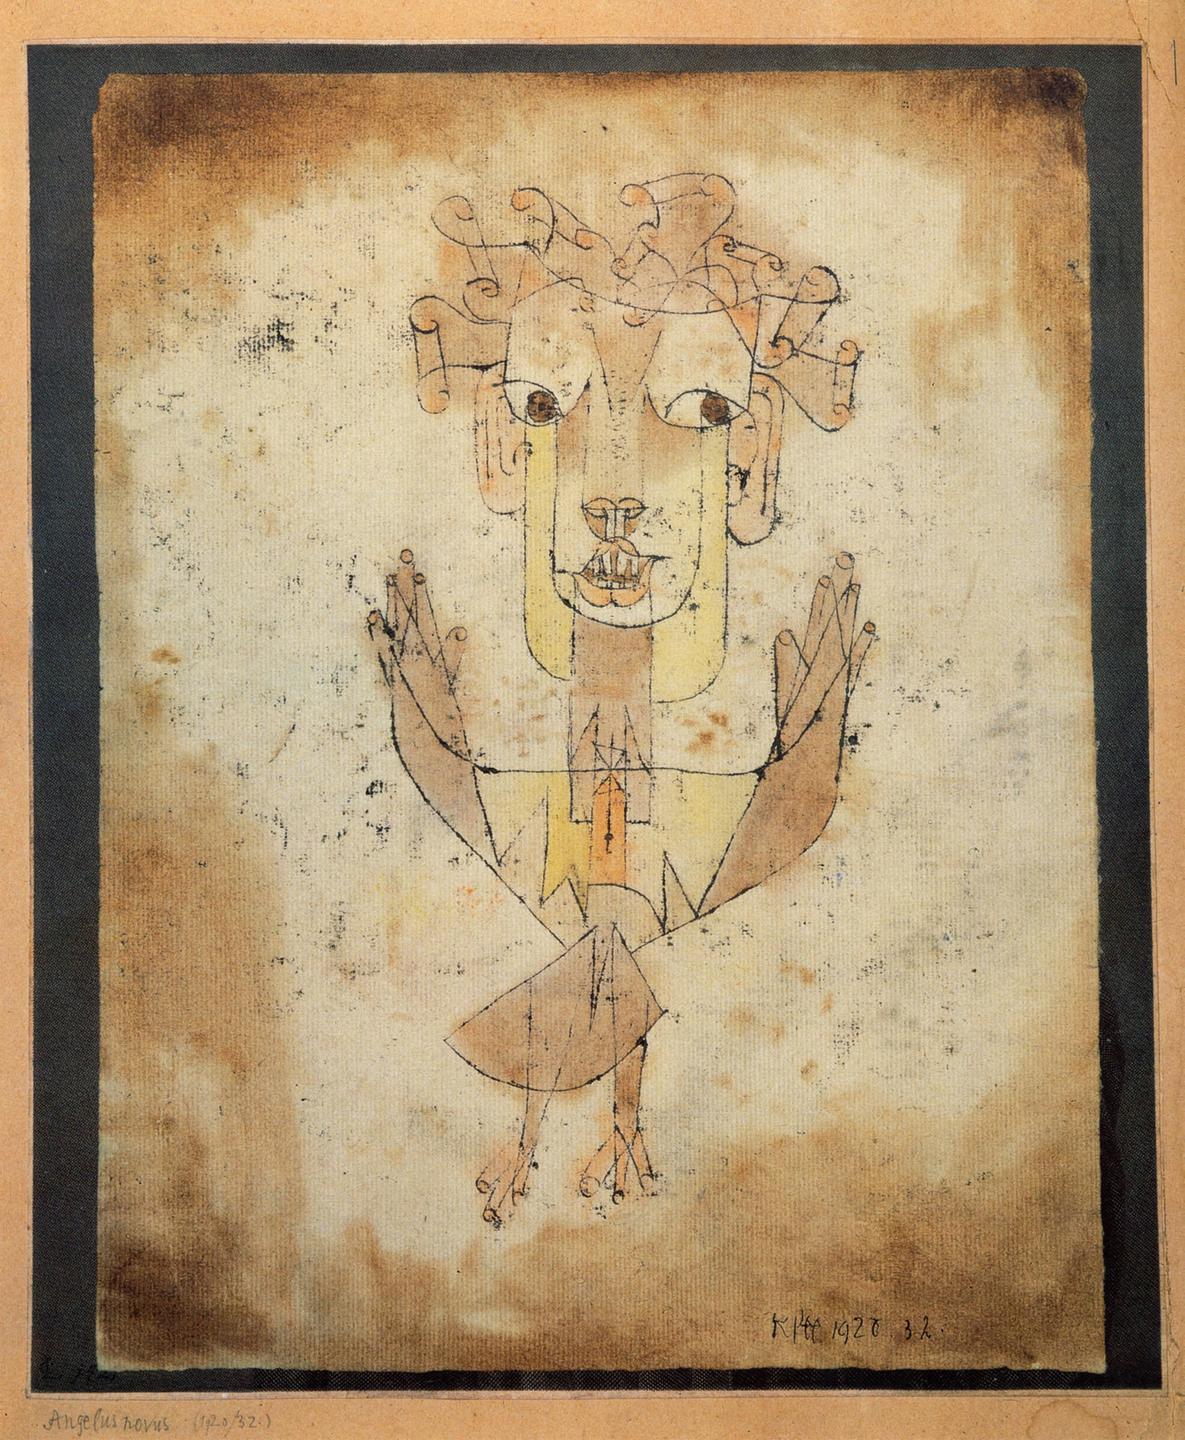 Die abstrakte Zeichnung eines Engels, des Angelus Novus ausgeführt vom Maler Paul Klee.